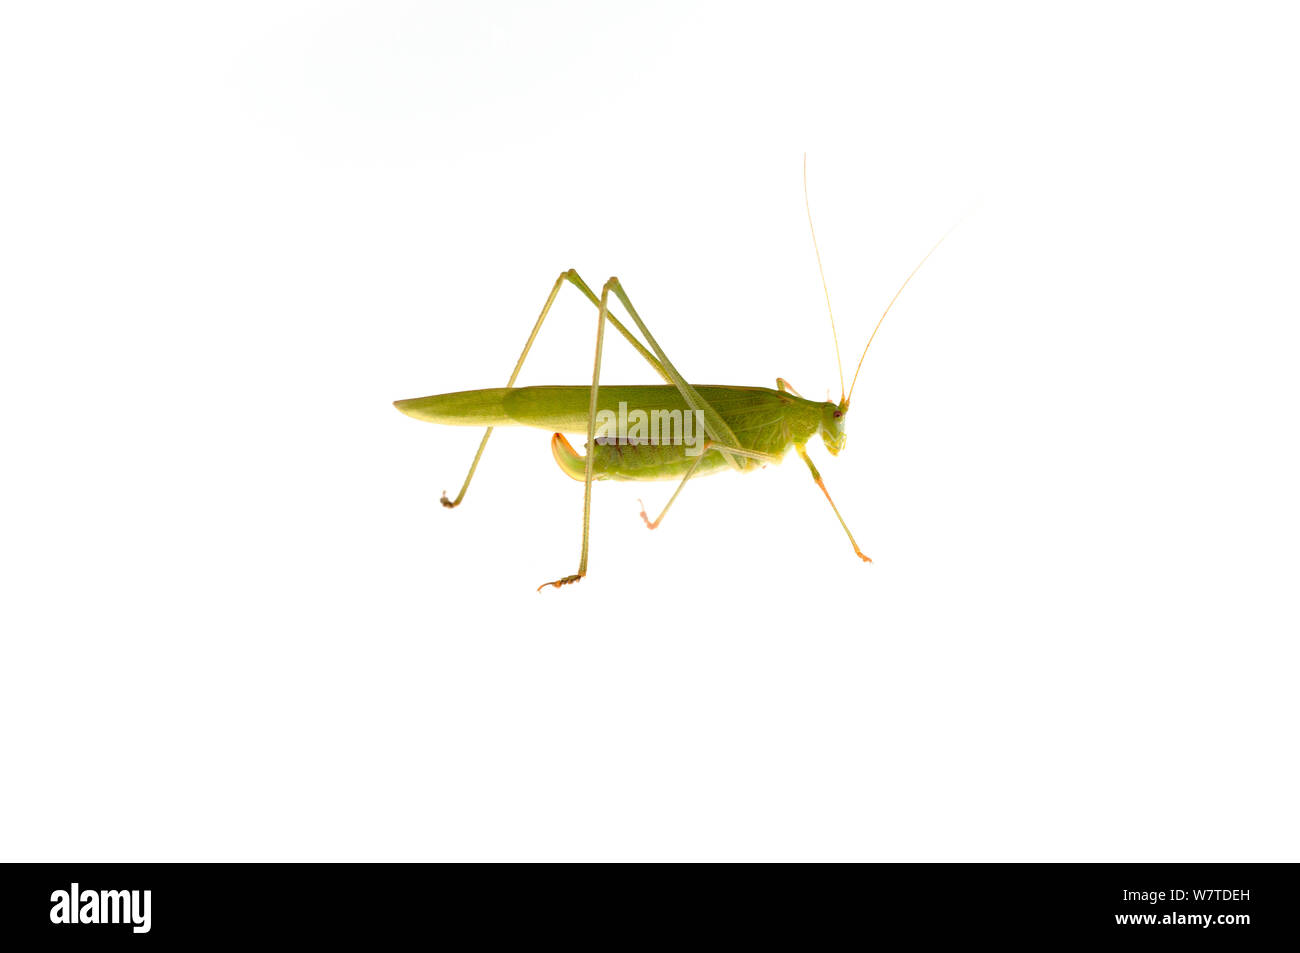 Sickle-Bearing Bush-Cricket (Phaneroptera falcata) Rhénanie-Palatinat, Allemagne, août. Projet d'Meetyourneighbors.net Banque D'Images